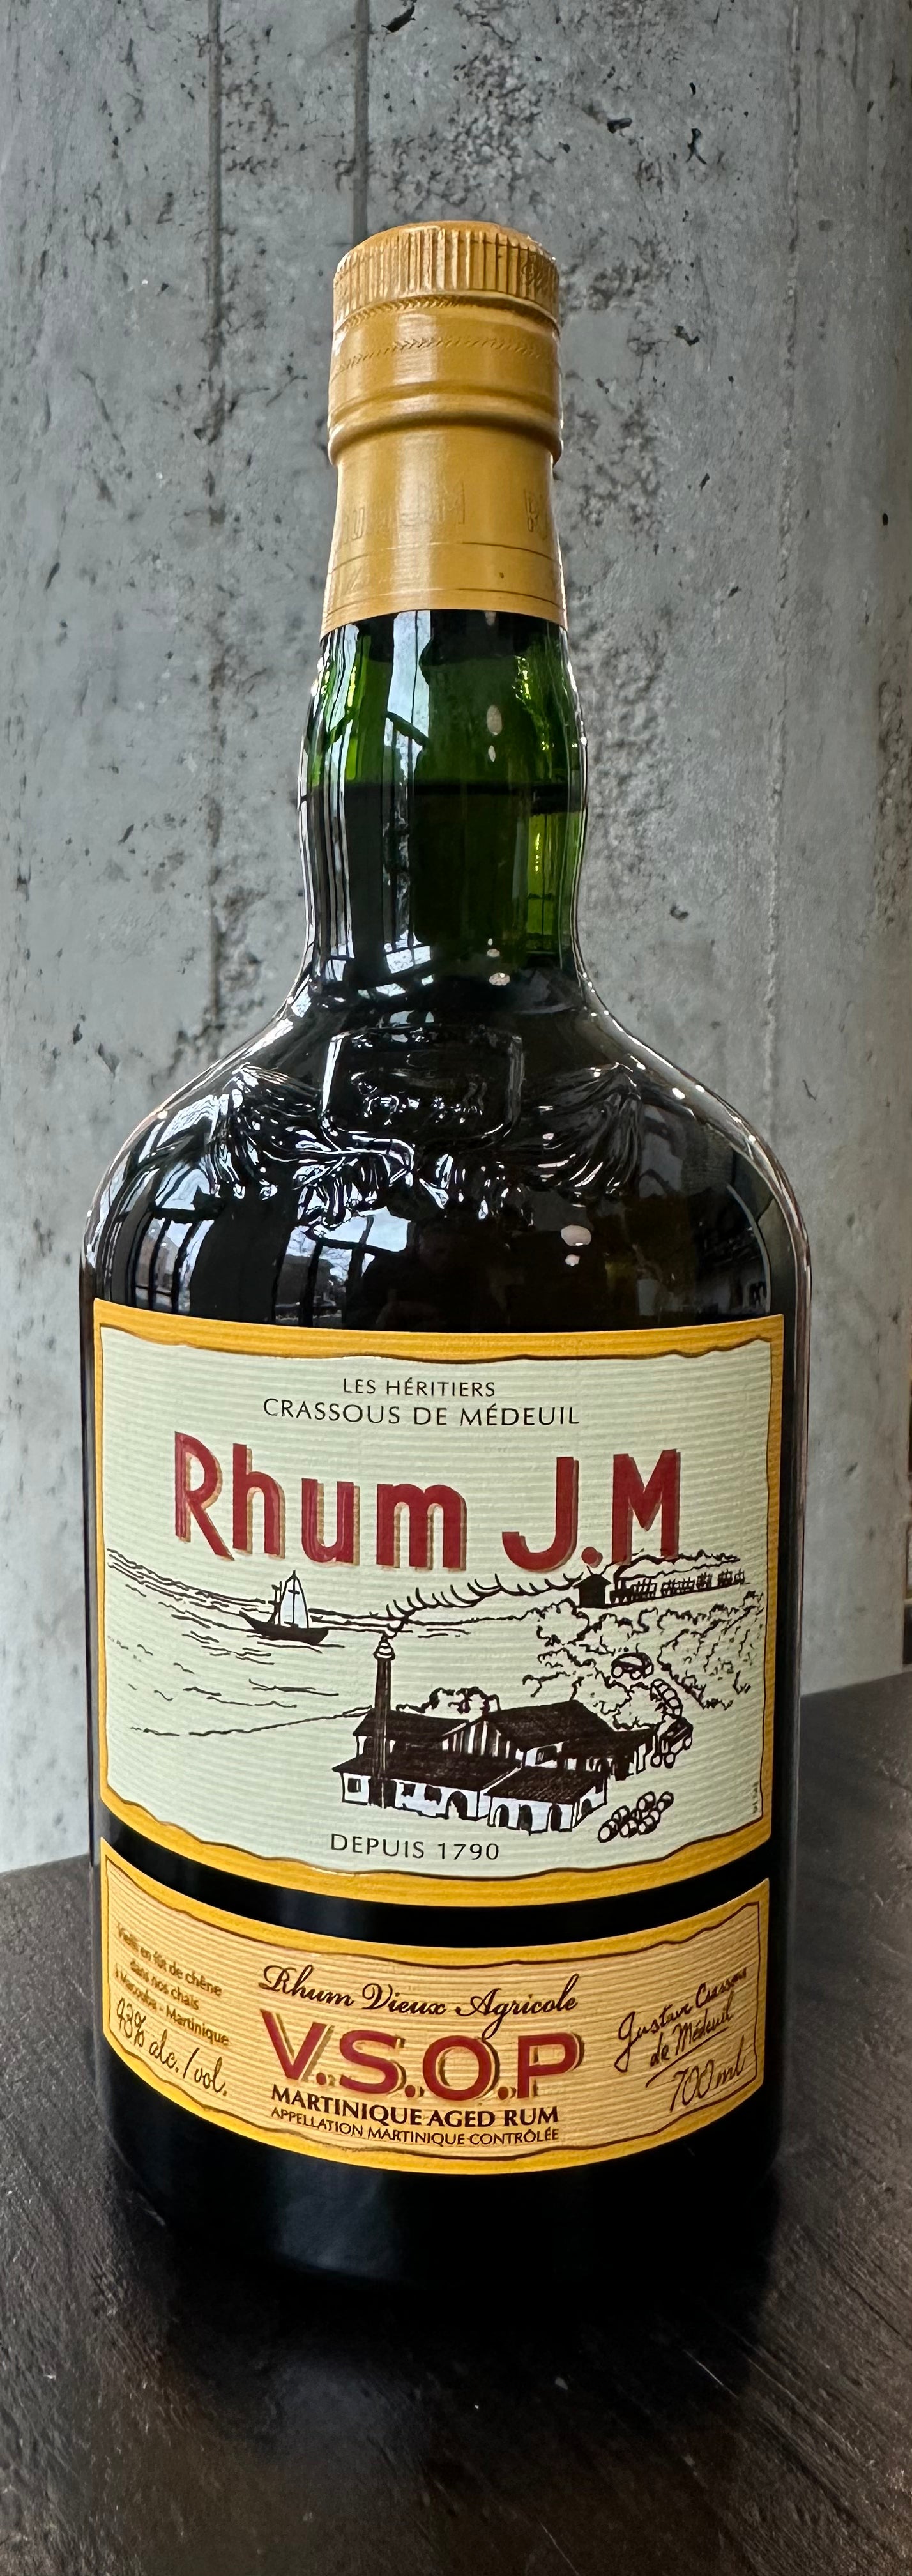 Rhum J.M. V.S.O.P. Martinique Aged Rum